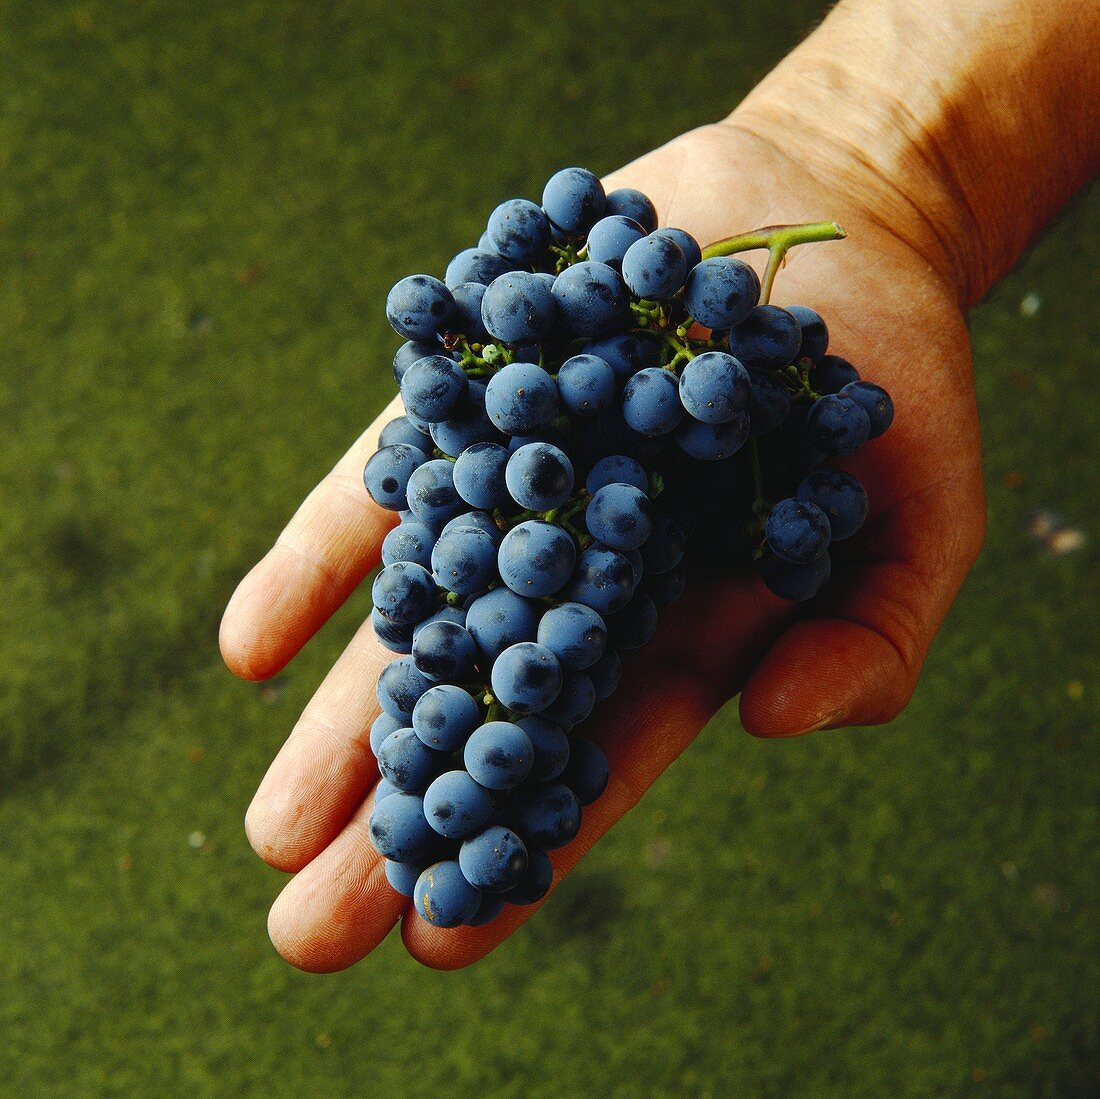 Hand zeigt frische Cabernet Sauvignon-Weintrauben,Maipo,Chile